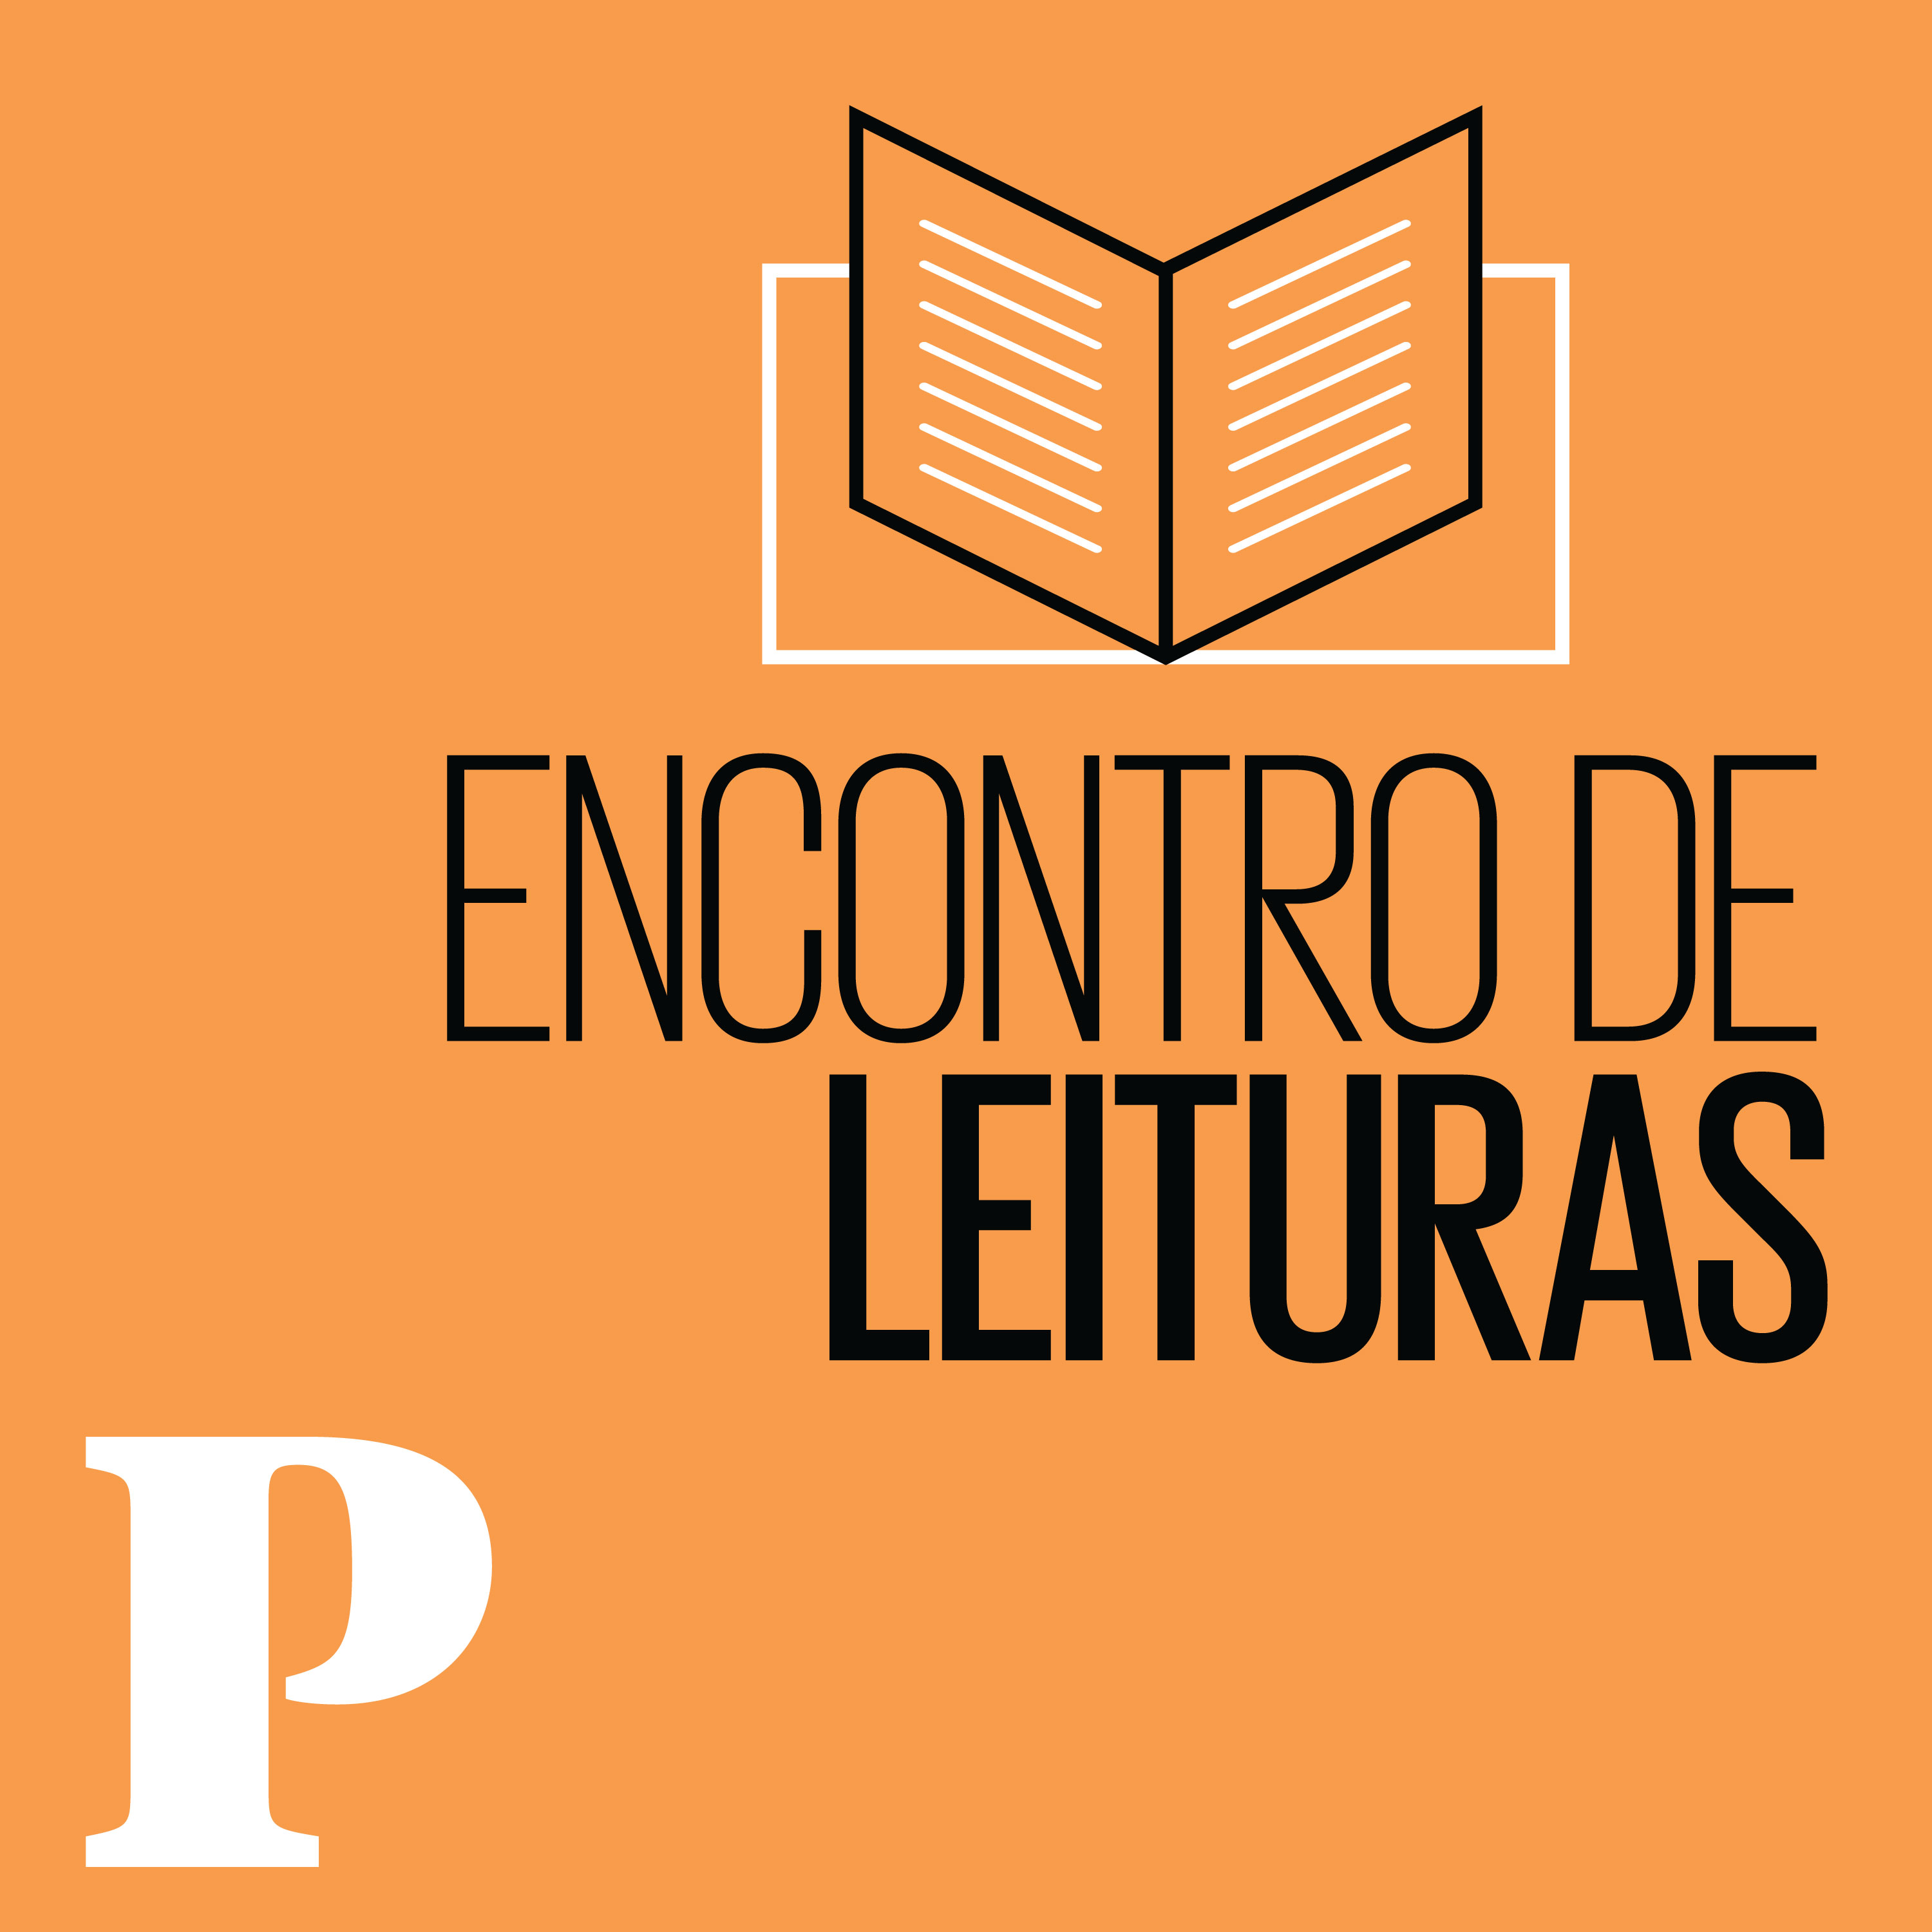 Podcast do Encontro de Leituras: "O que é Meu", de José Henrique Bortoluci